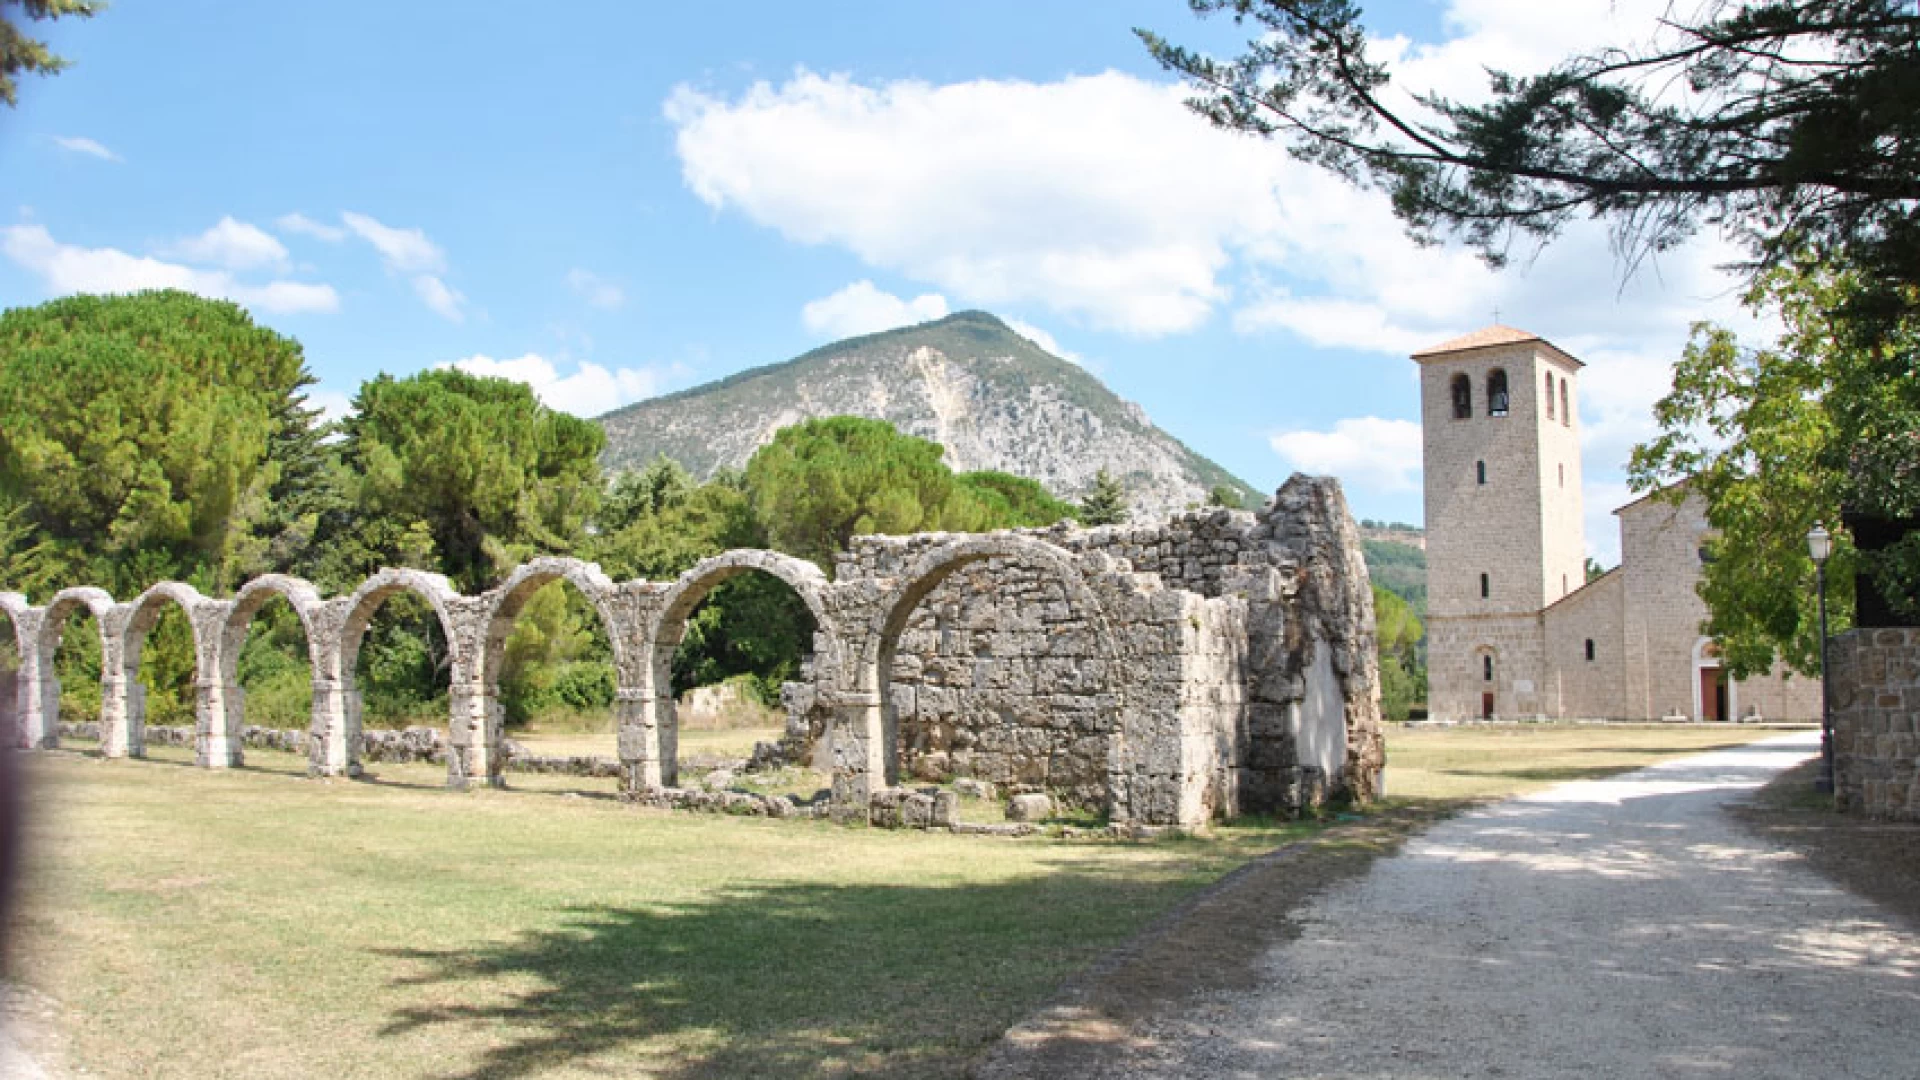 Candidatura a patrimonio dell’umanità UNESCO per il complesso monastico di San Vincenzo al Volturno. Ieri l’incontro presso il complesso monastico.